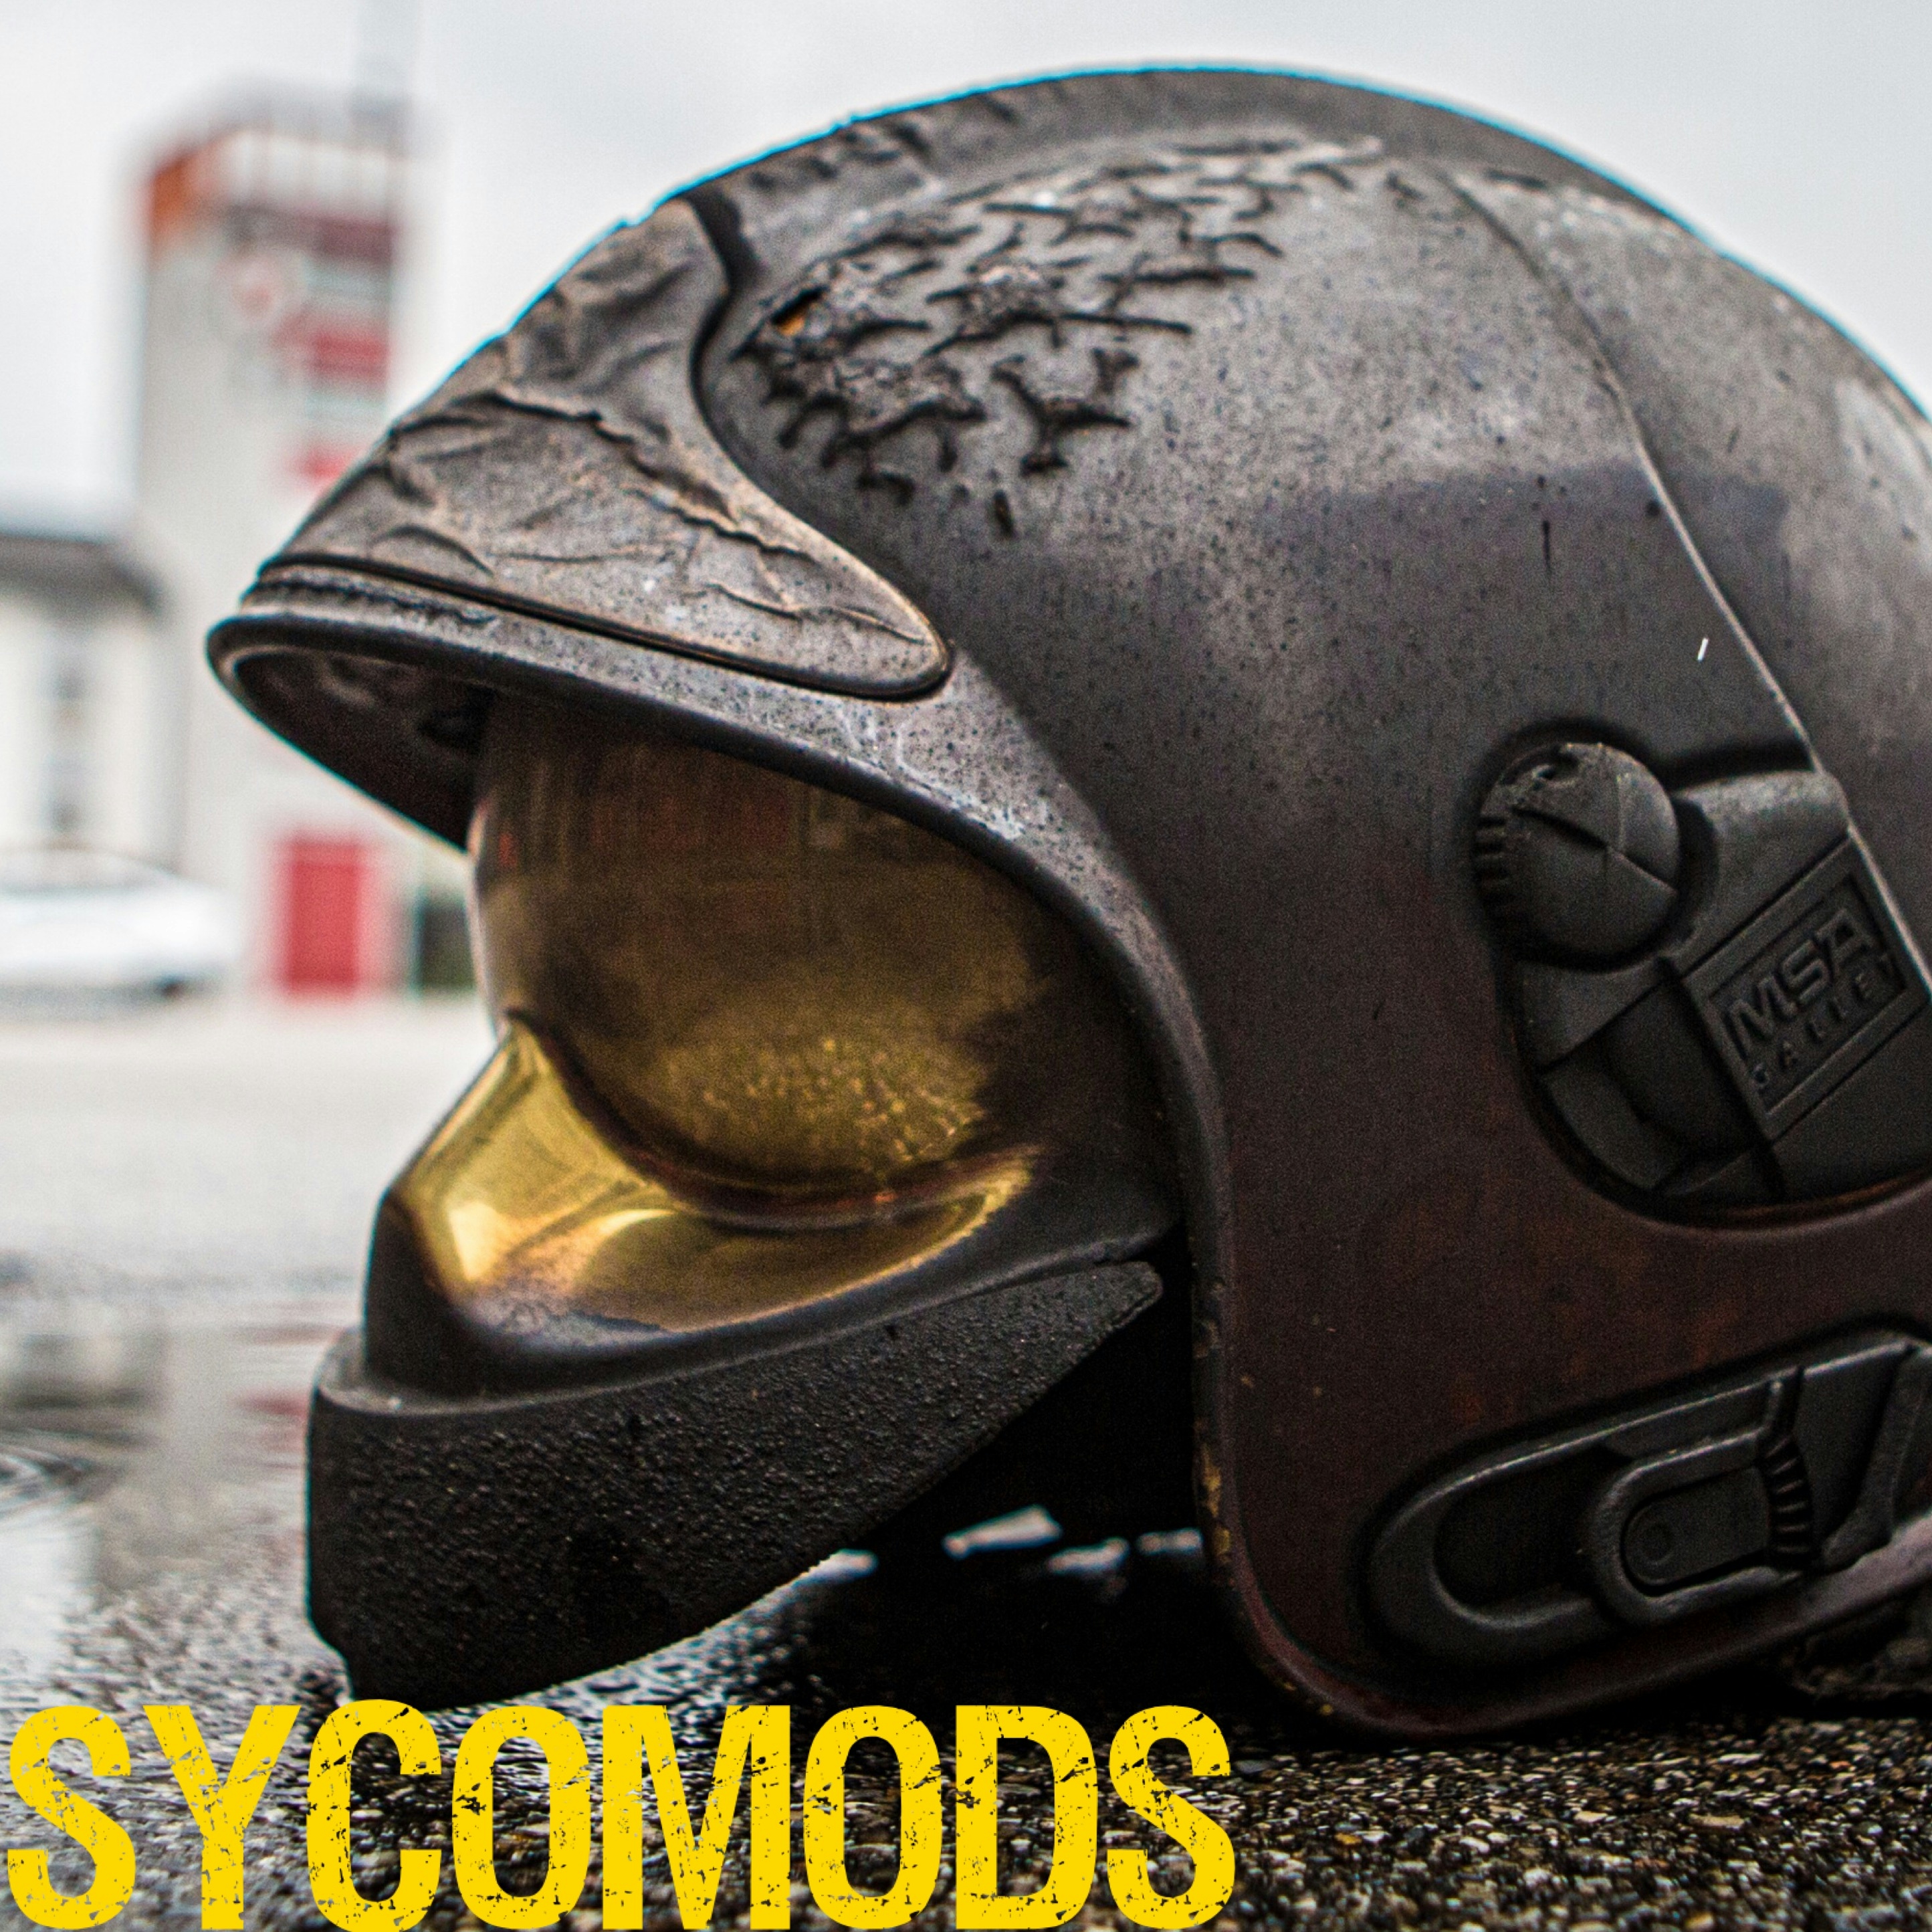 Sycomods